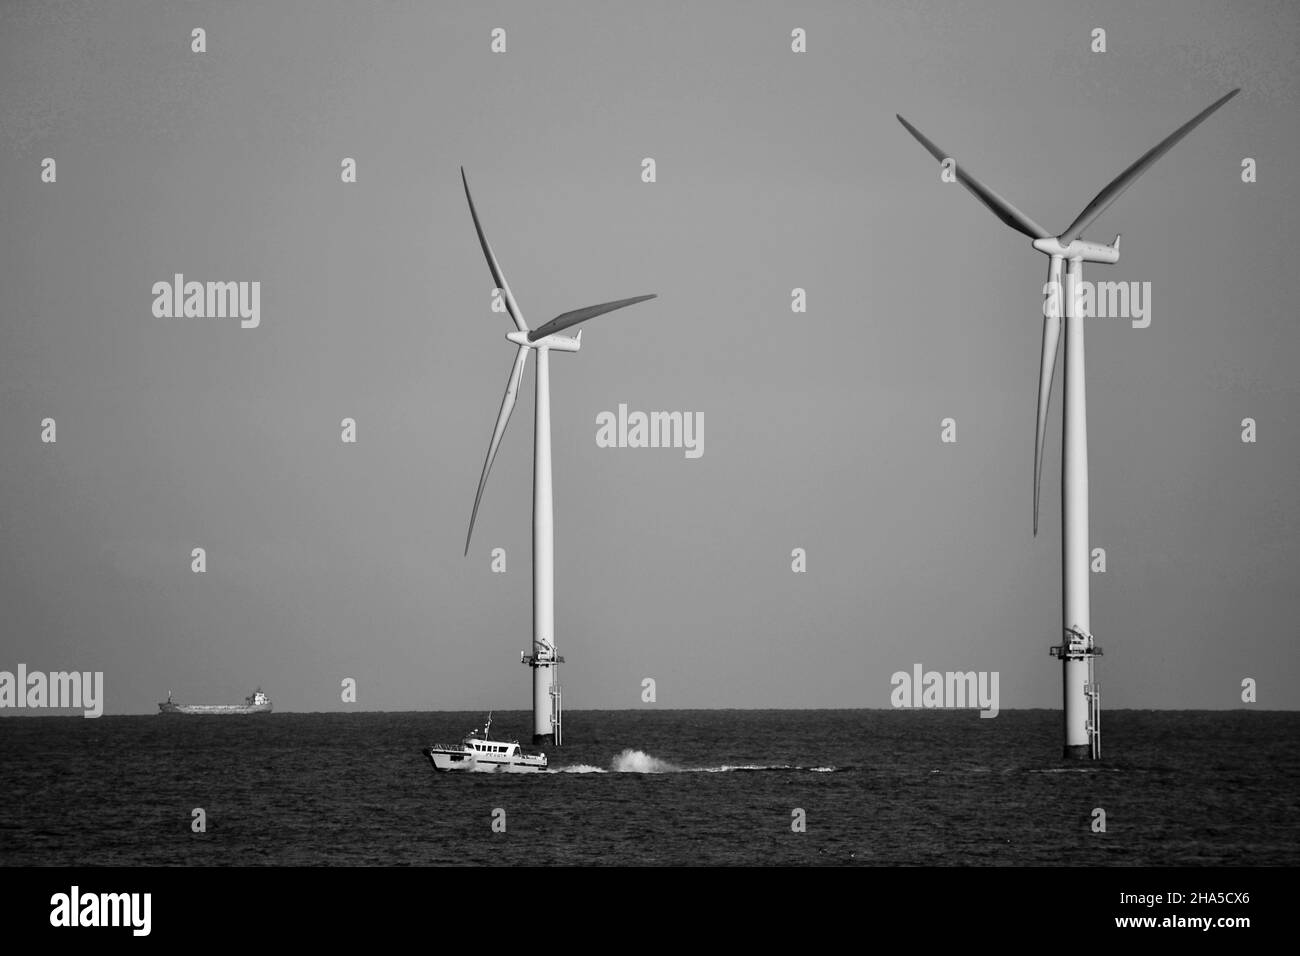 Schwarz-Weiß-Bild mit natürlichem Licht des Offshore-Windparks Teesside, der von EDF Renewables betrieben wird. Aufgenommen vom Südbahnhof, Redcar, North Yorkshire, Großbritannien Stockfoto